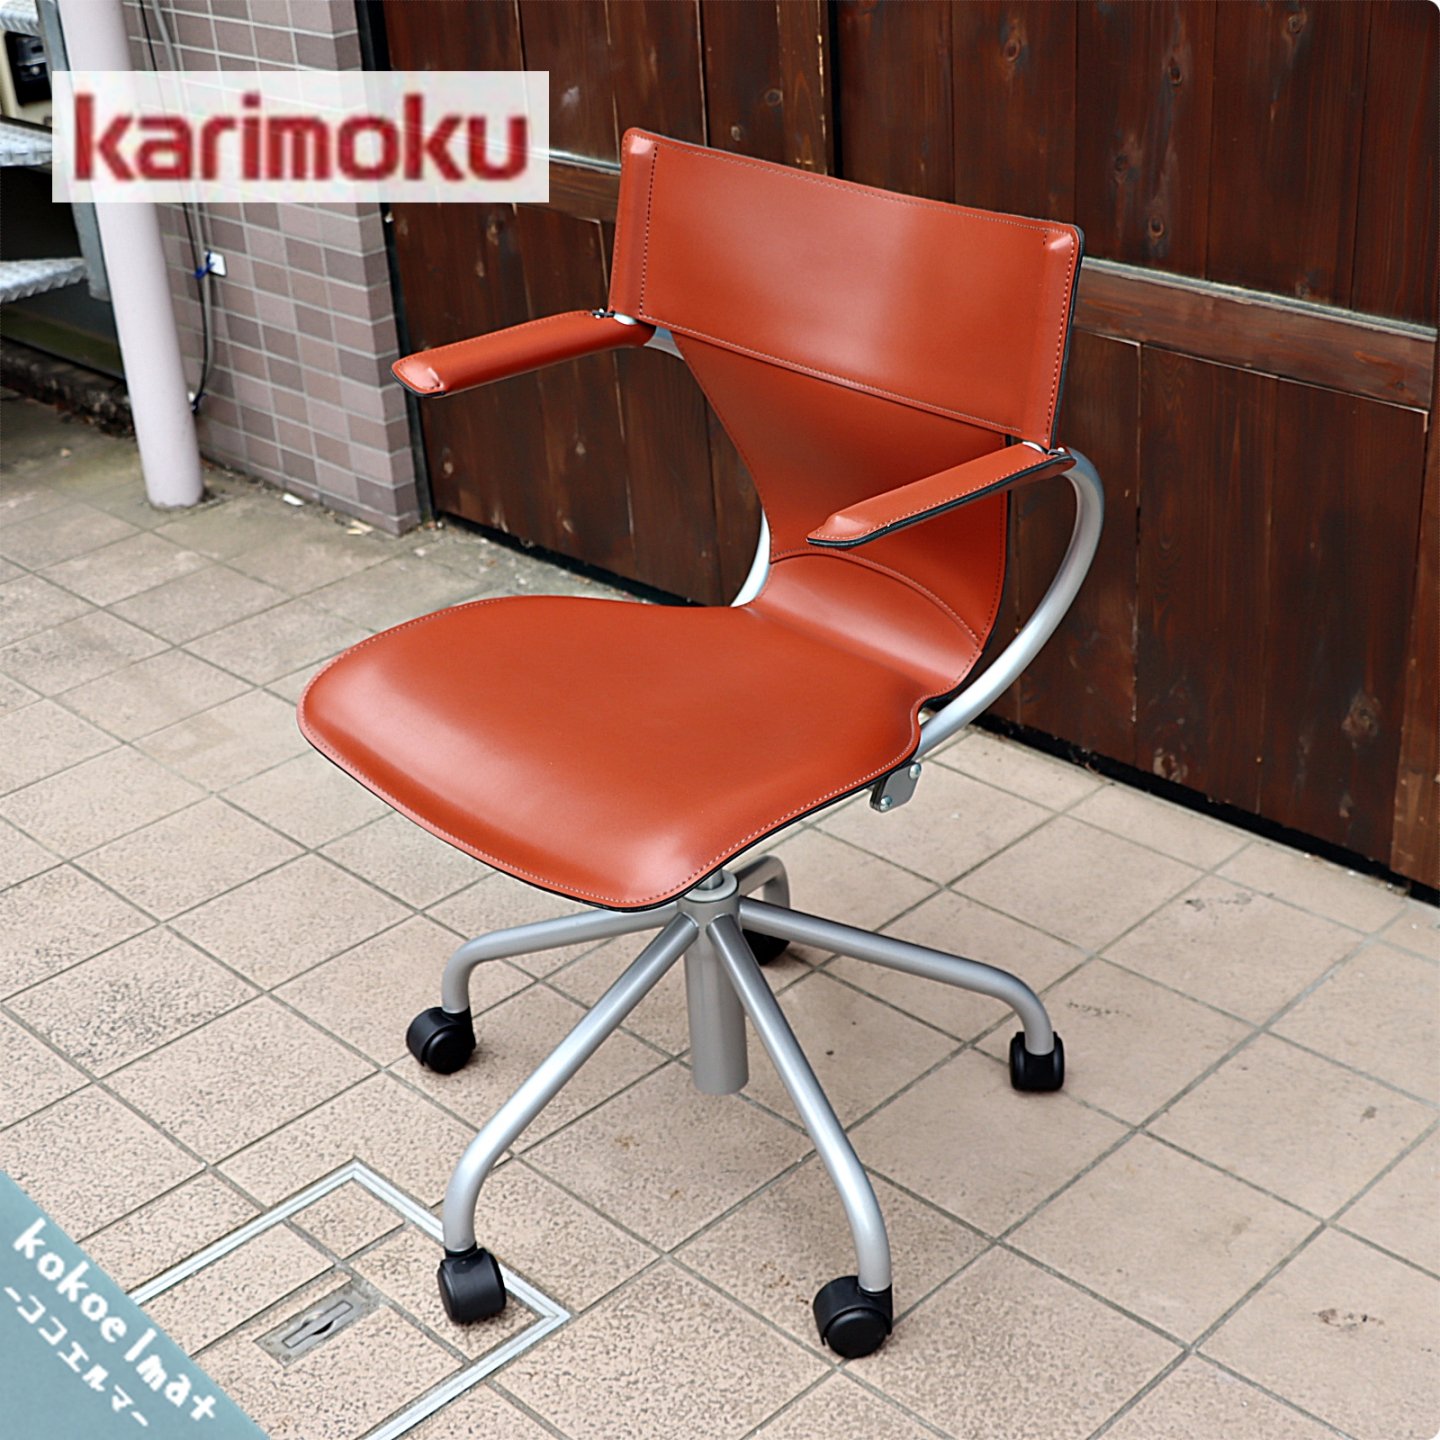 karimoku(カリモク家具)のデスクチェアー/XT4310です。スタイリッシュでモダンなオフィスチェア。学生の方の学習椅子や在宅のリモートワークでも活躍しそうです♪  - kokoelma -ココエルマ- 雑貨・中古家具・北欧家具・アンティーク家具の通販 インテリアショップ 多摩 ...